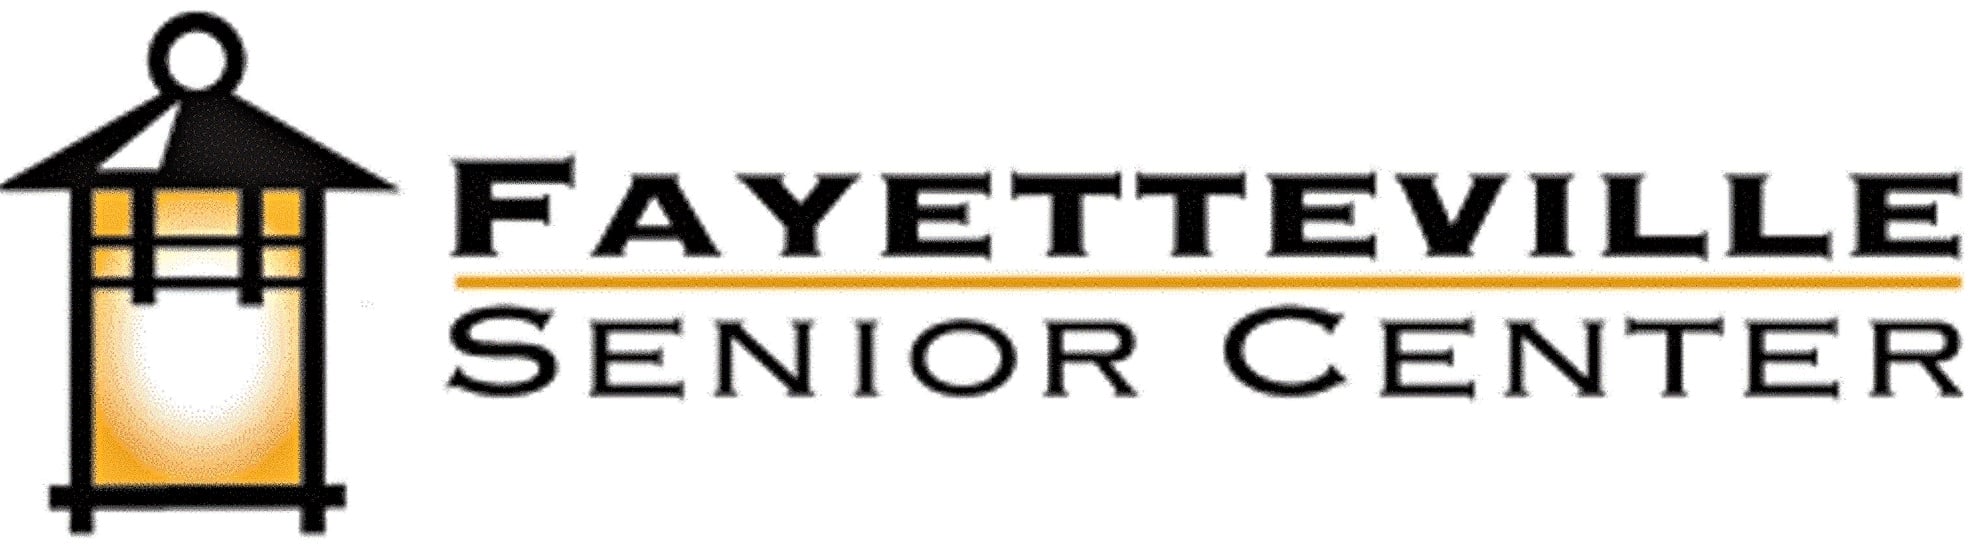 Fayetteville Senior Center